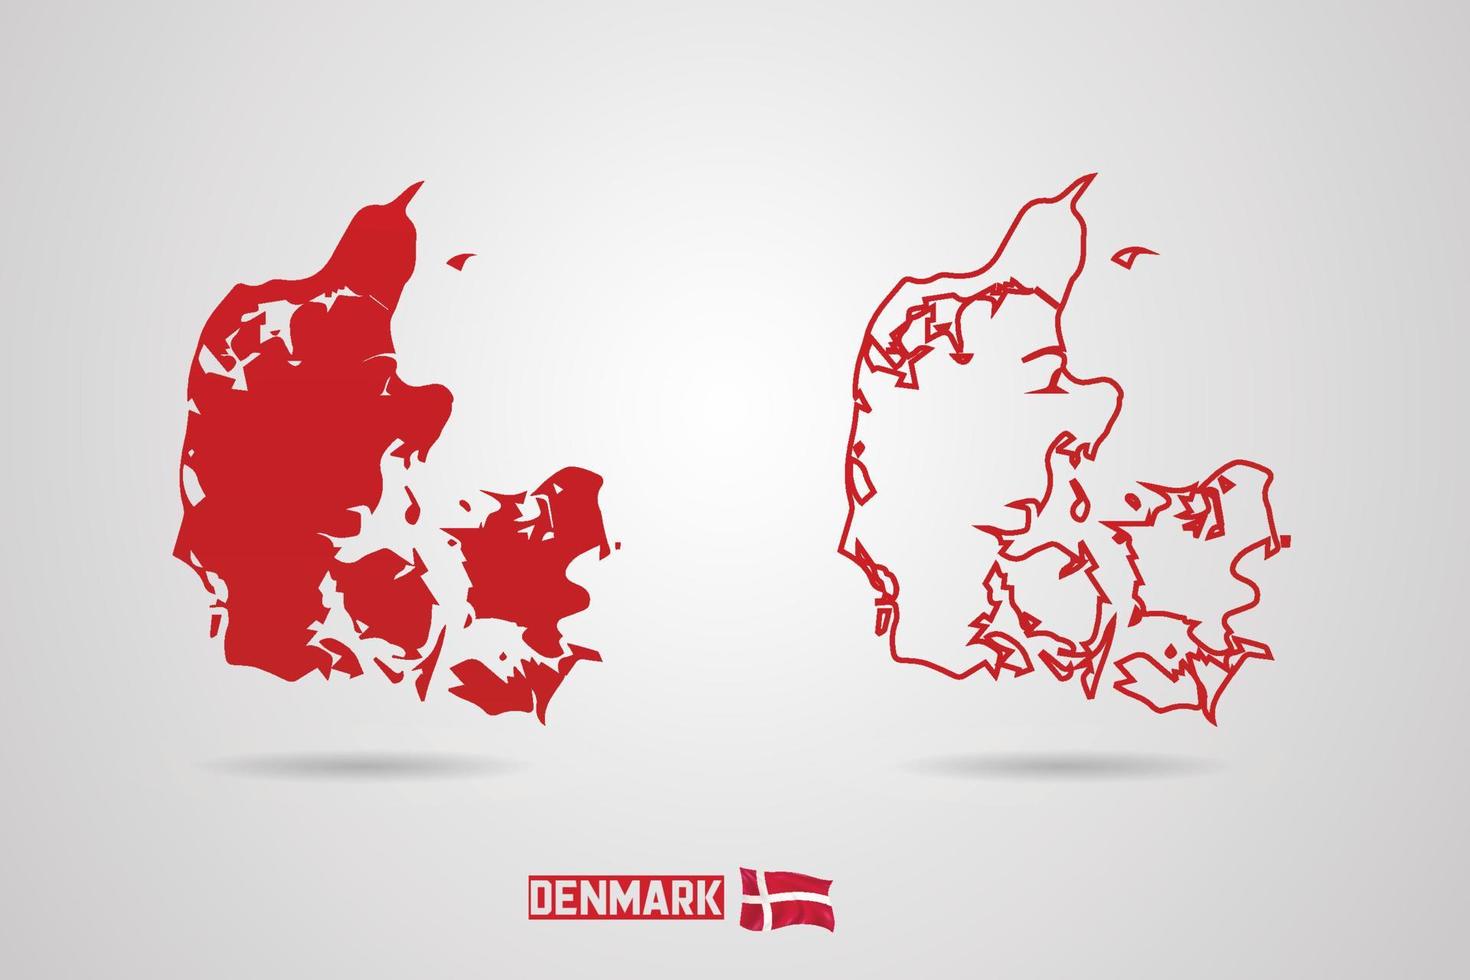 Denemarken republiek kaart met vlag, vector illustratie.